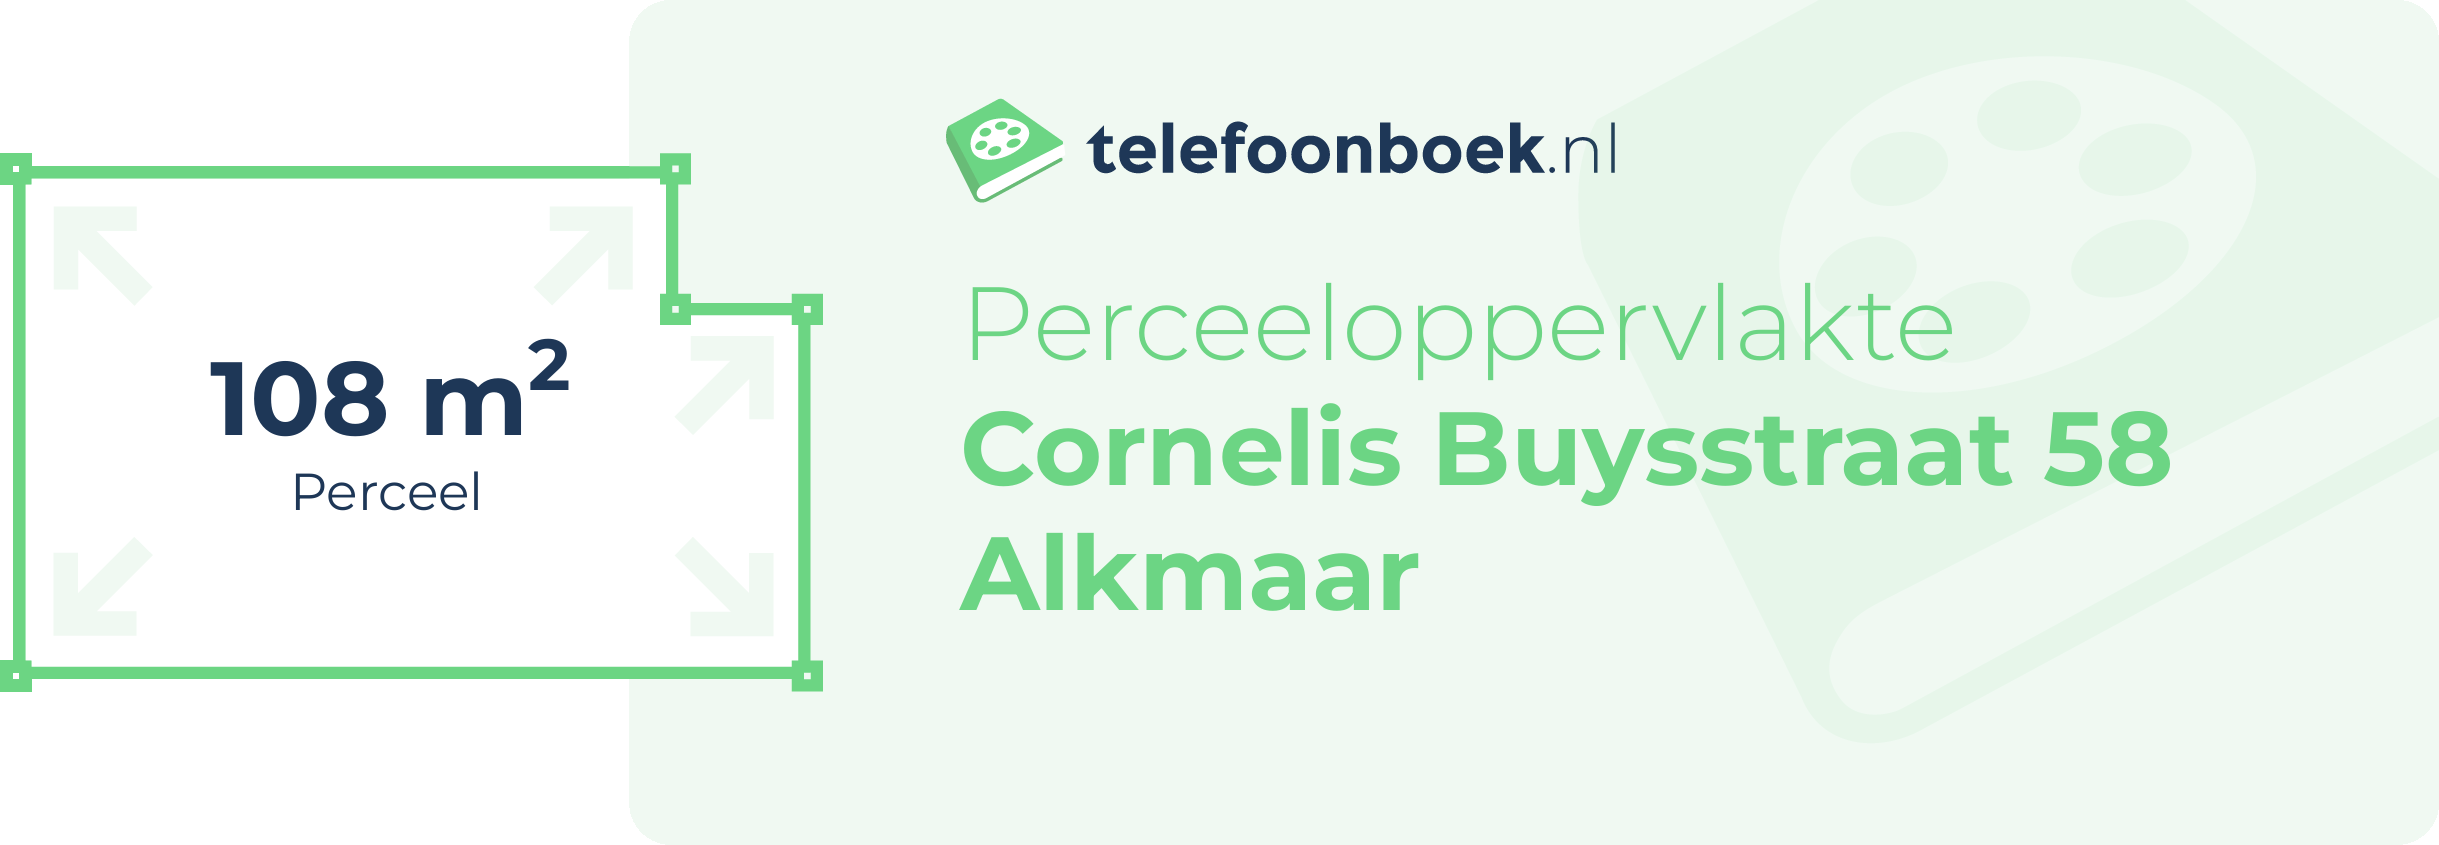 Perceeloppervlakte Cornelis Buysstraat 58 Alkmaar